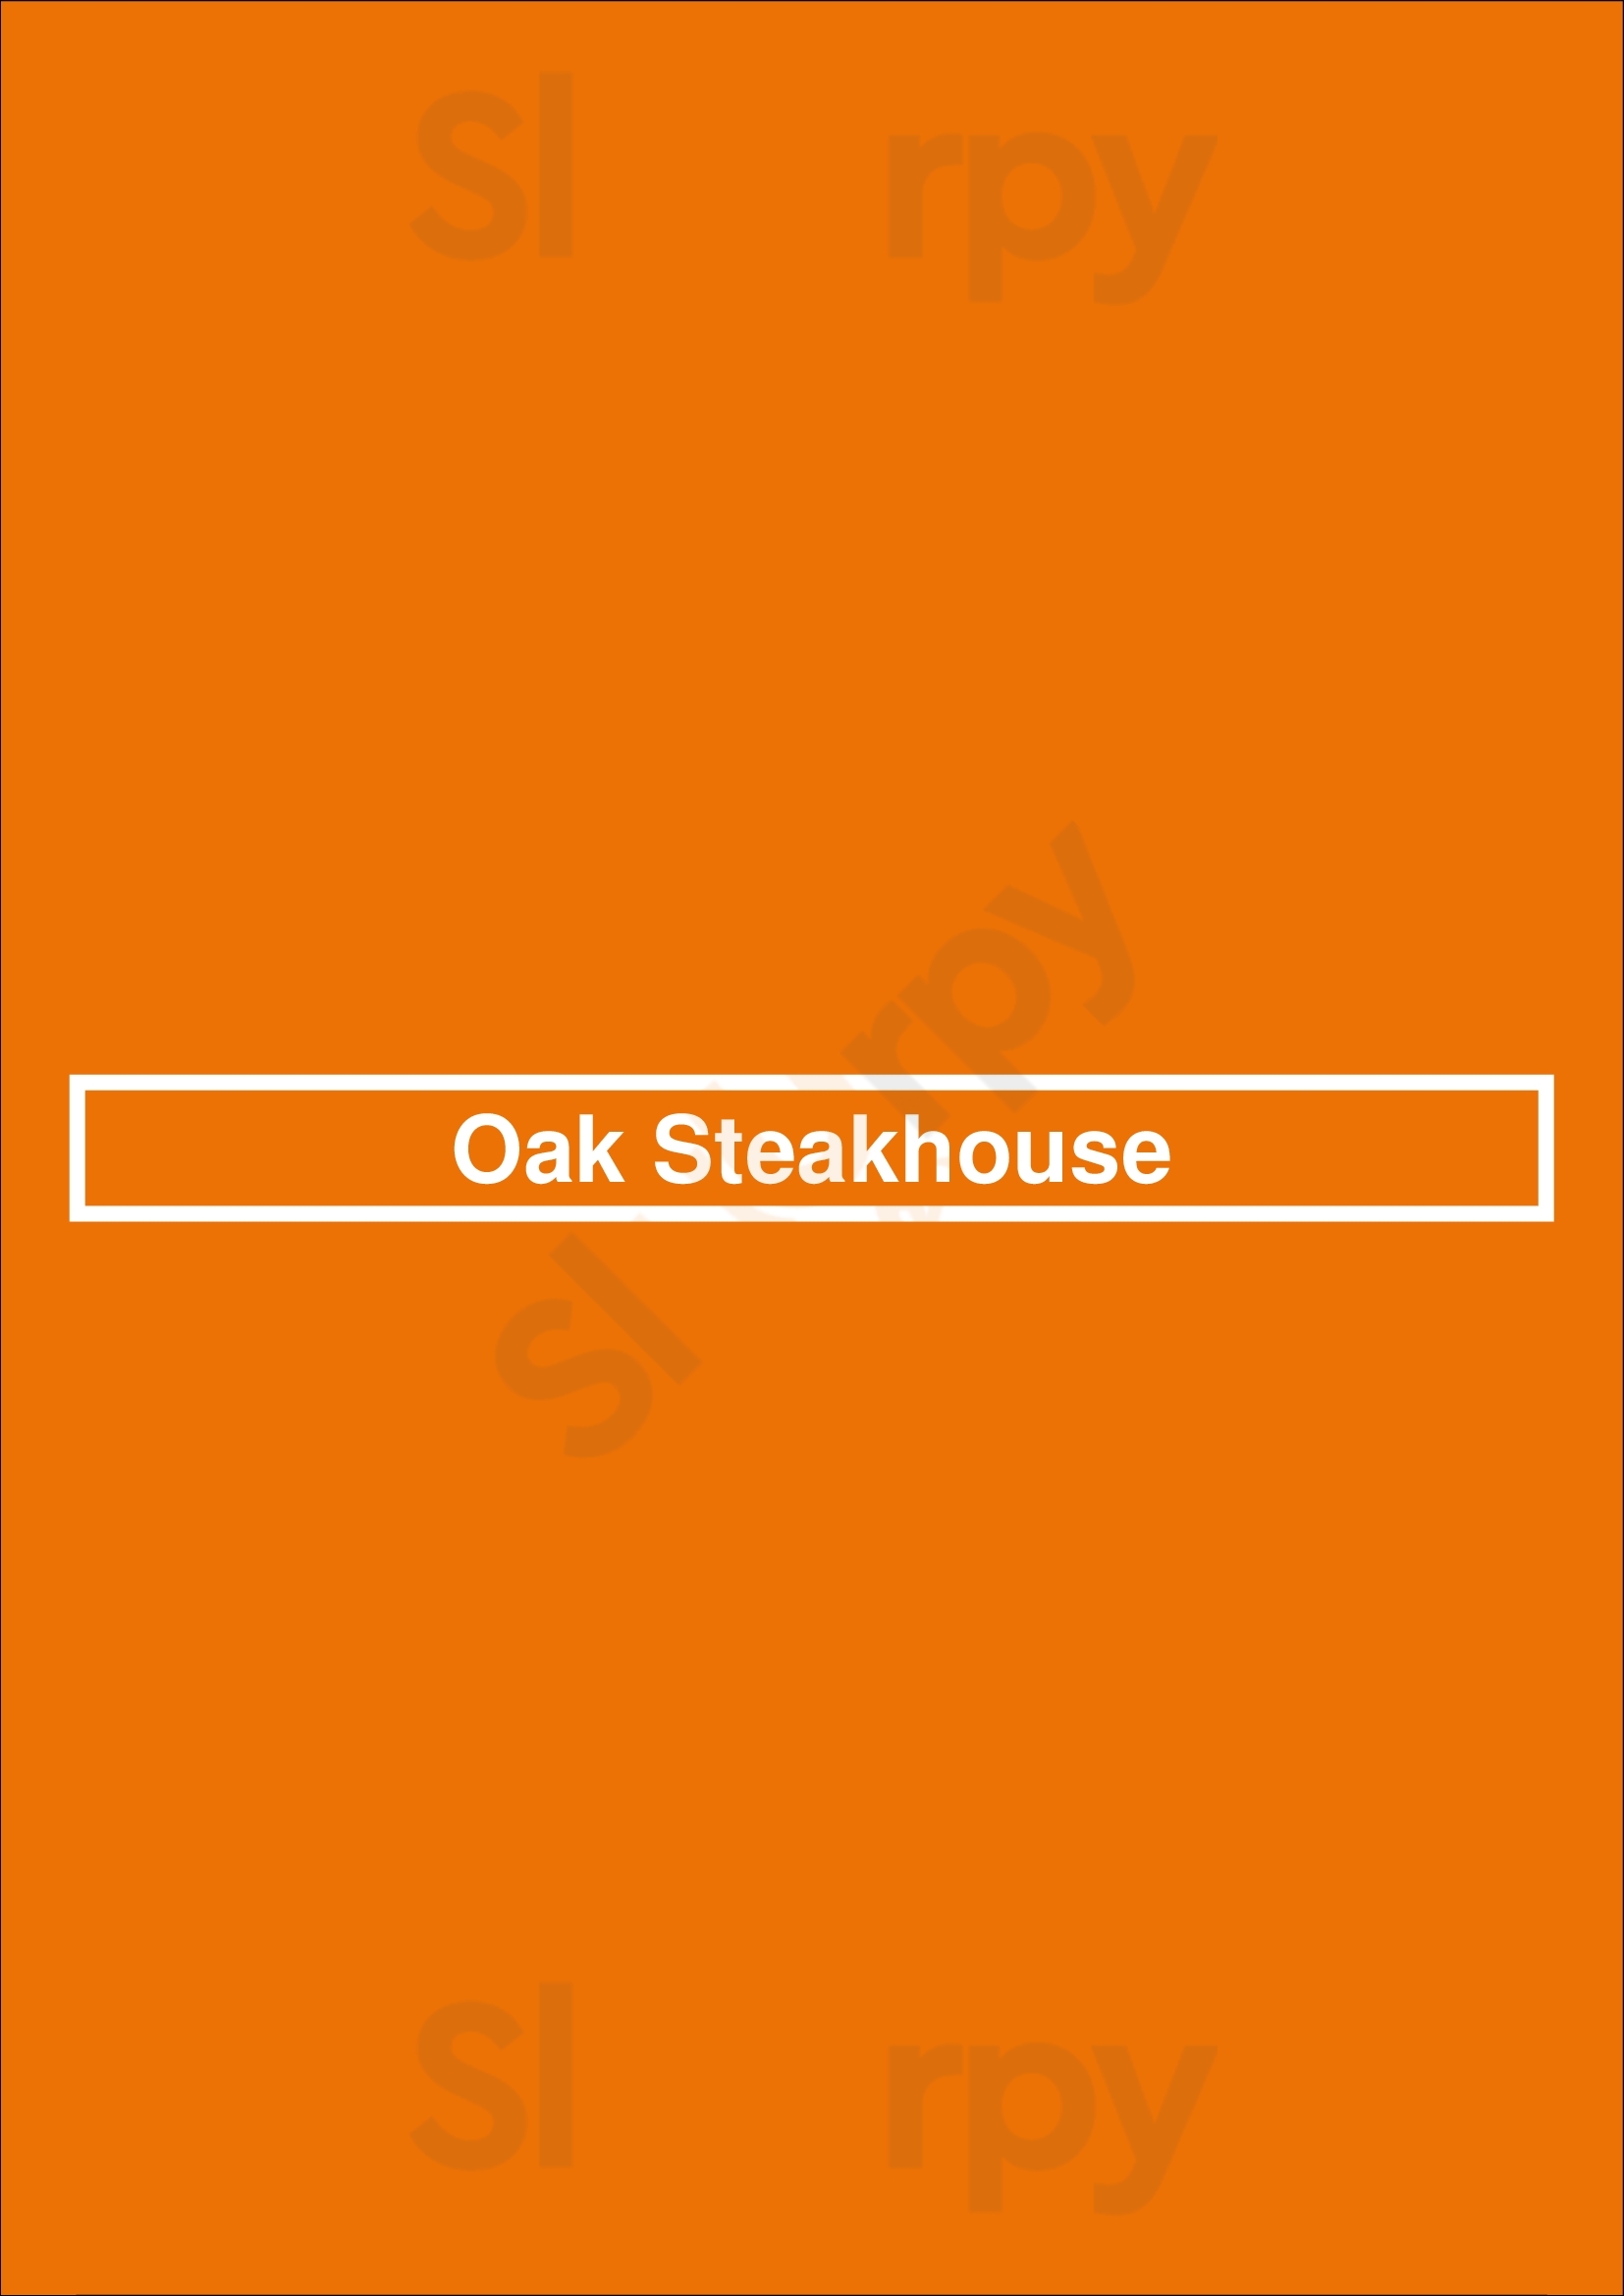 Oak Steakhouse Charlotte Menu - 1